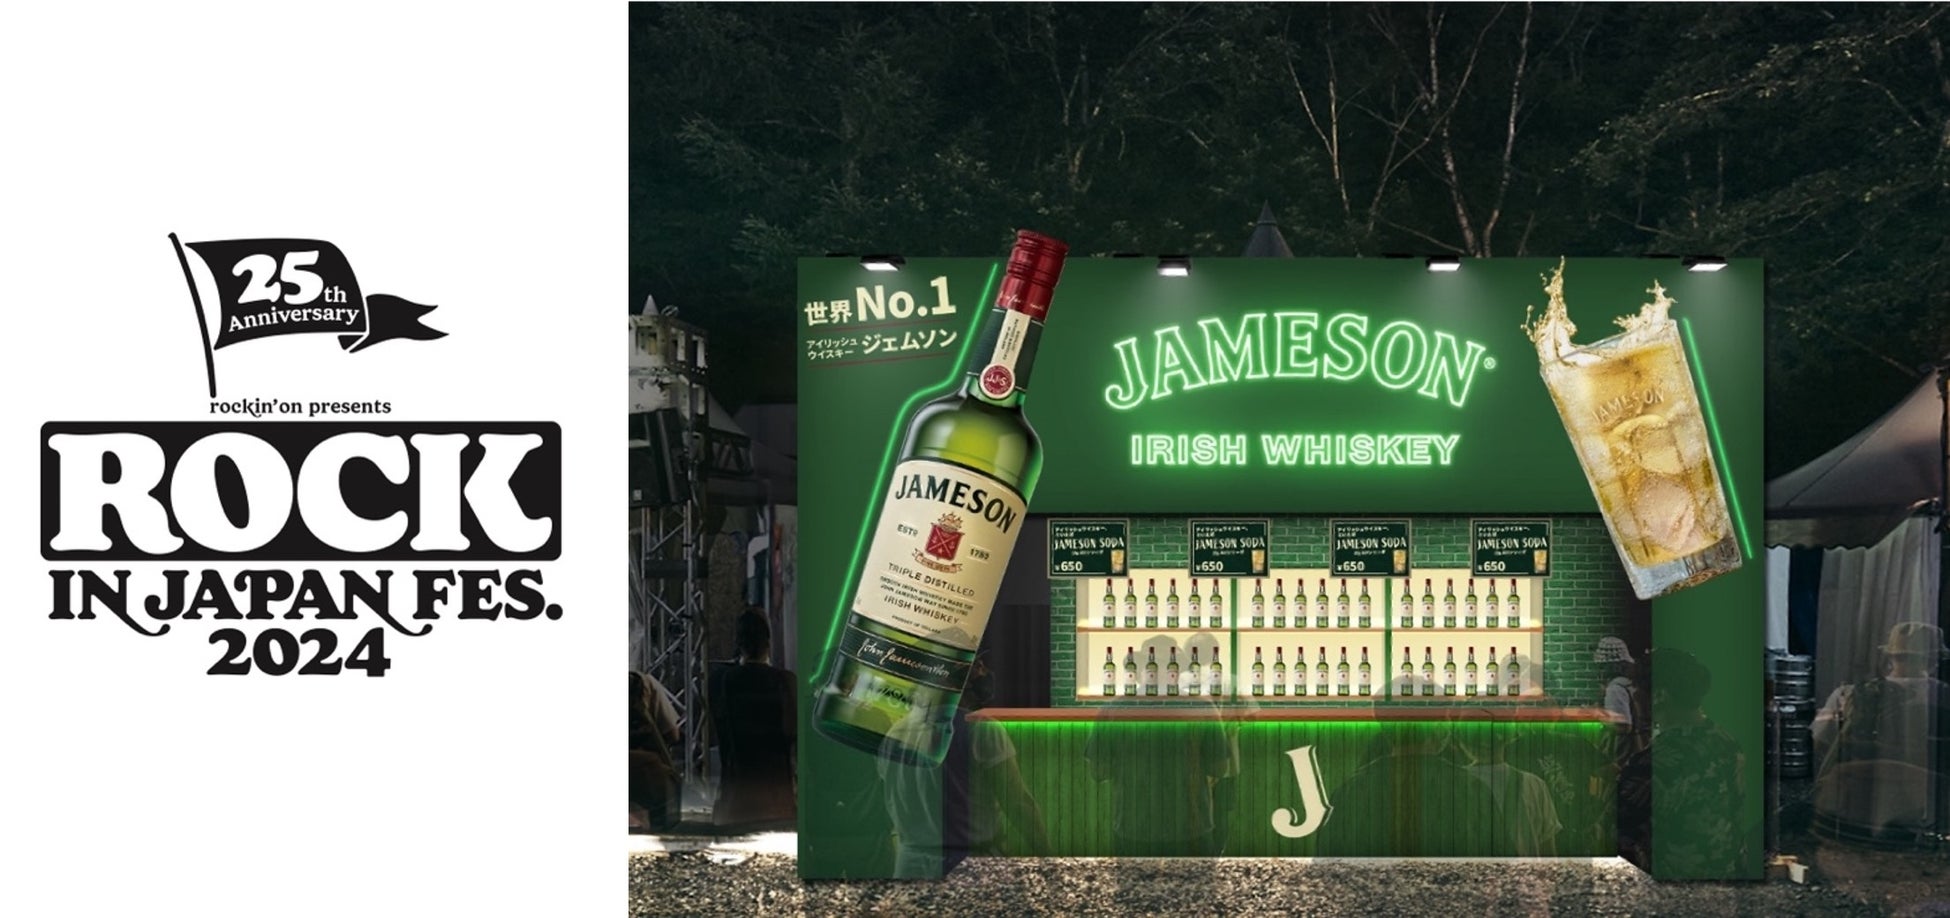 アイリッシュウイスキー 「ジェムソン」が「ROCK IN JAPAN FESTIVAL 2024」に初協賛！ジェムソングリーンのブースで「ジェムソン・ソーダ」を提供